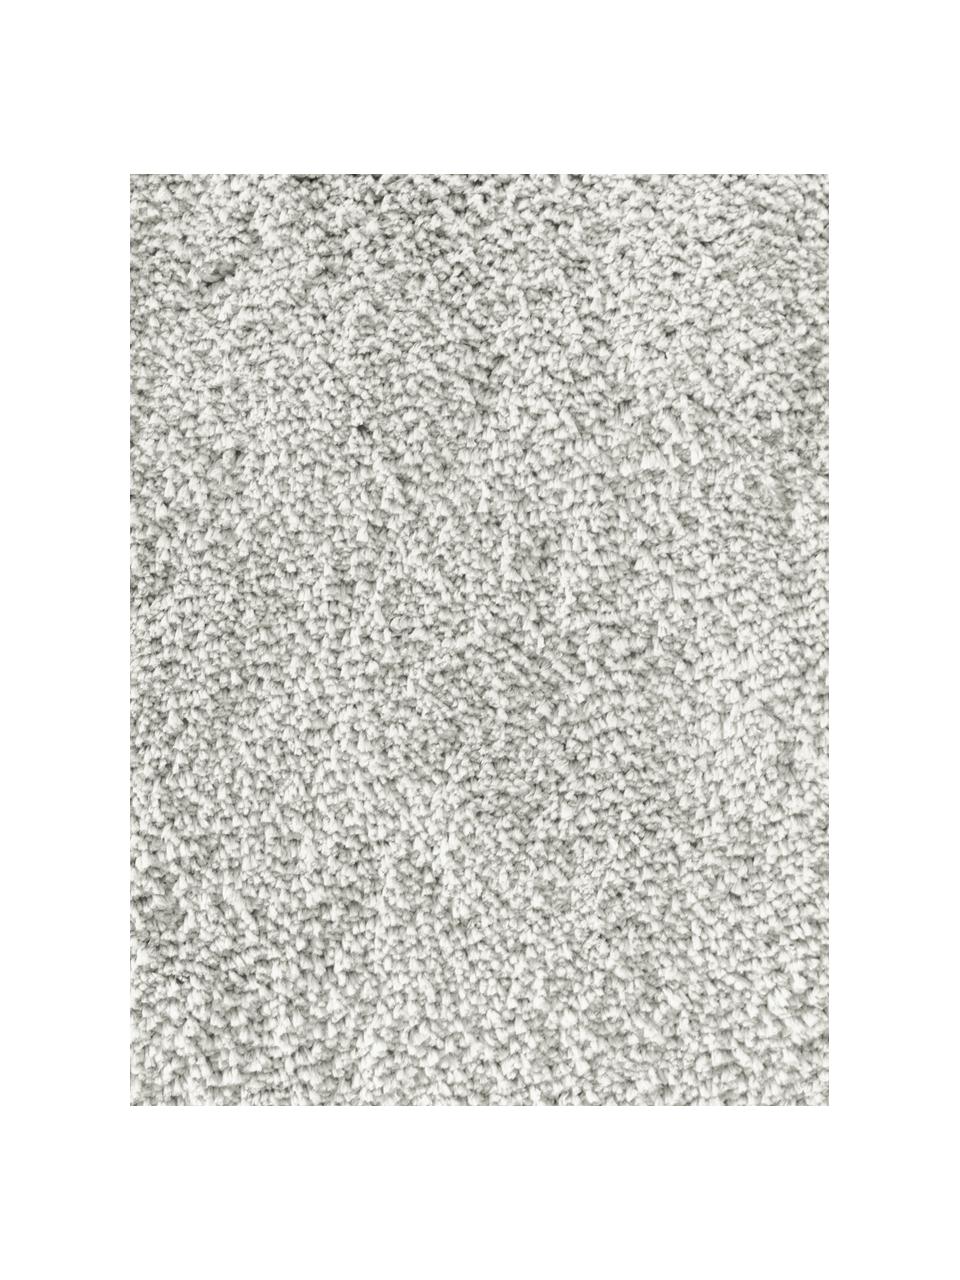 Načechraný koberec s vysokým vlasem Leighton, Světle šedá, Š 120 cm, D 180 cm (velikost S)